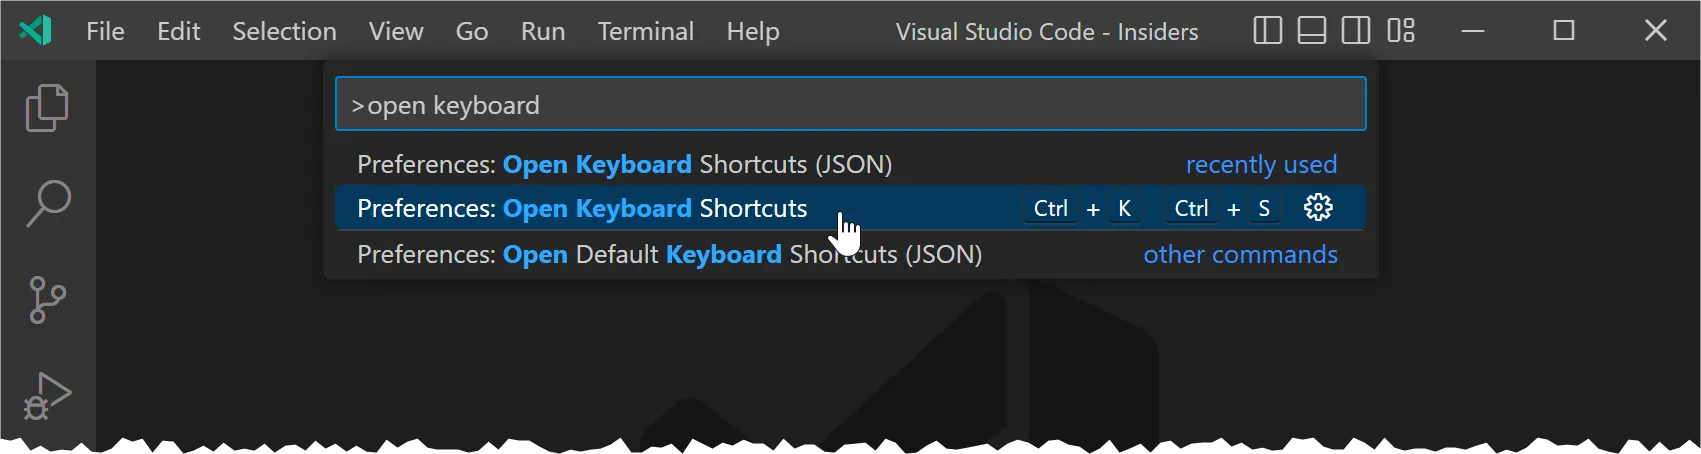 Open Keyboard Shortcuts